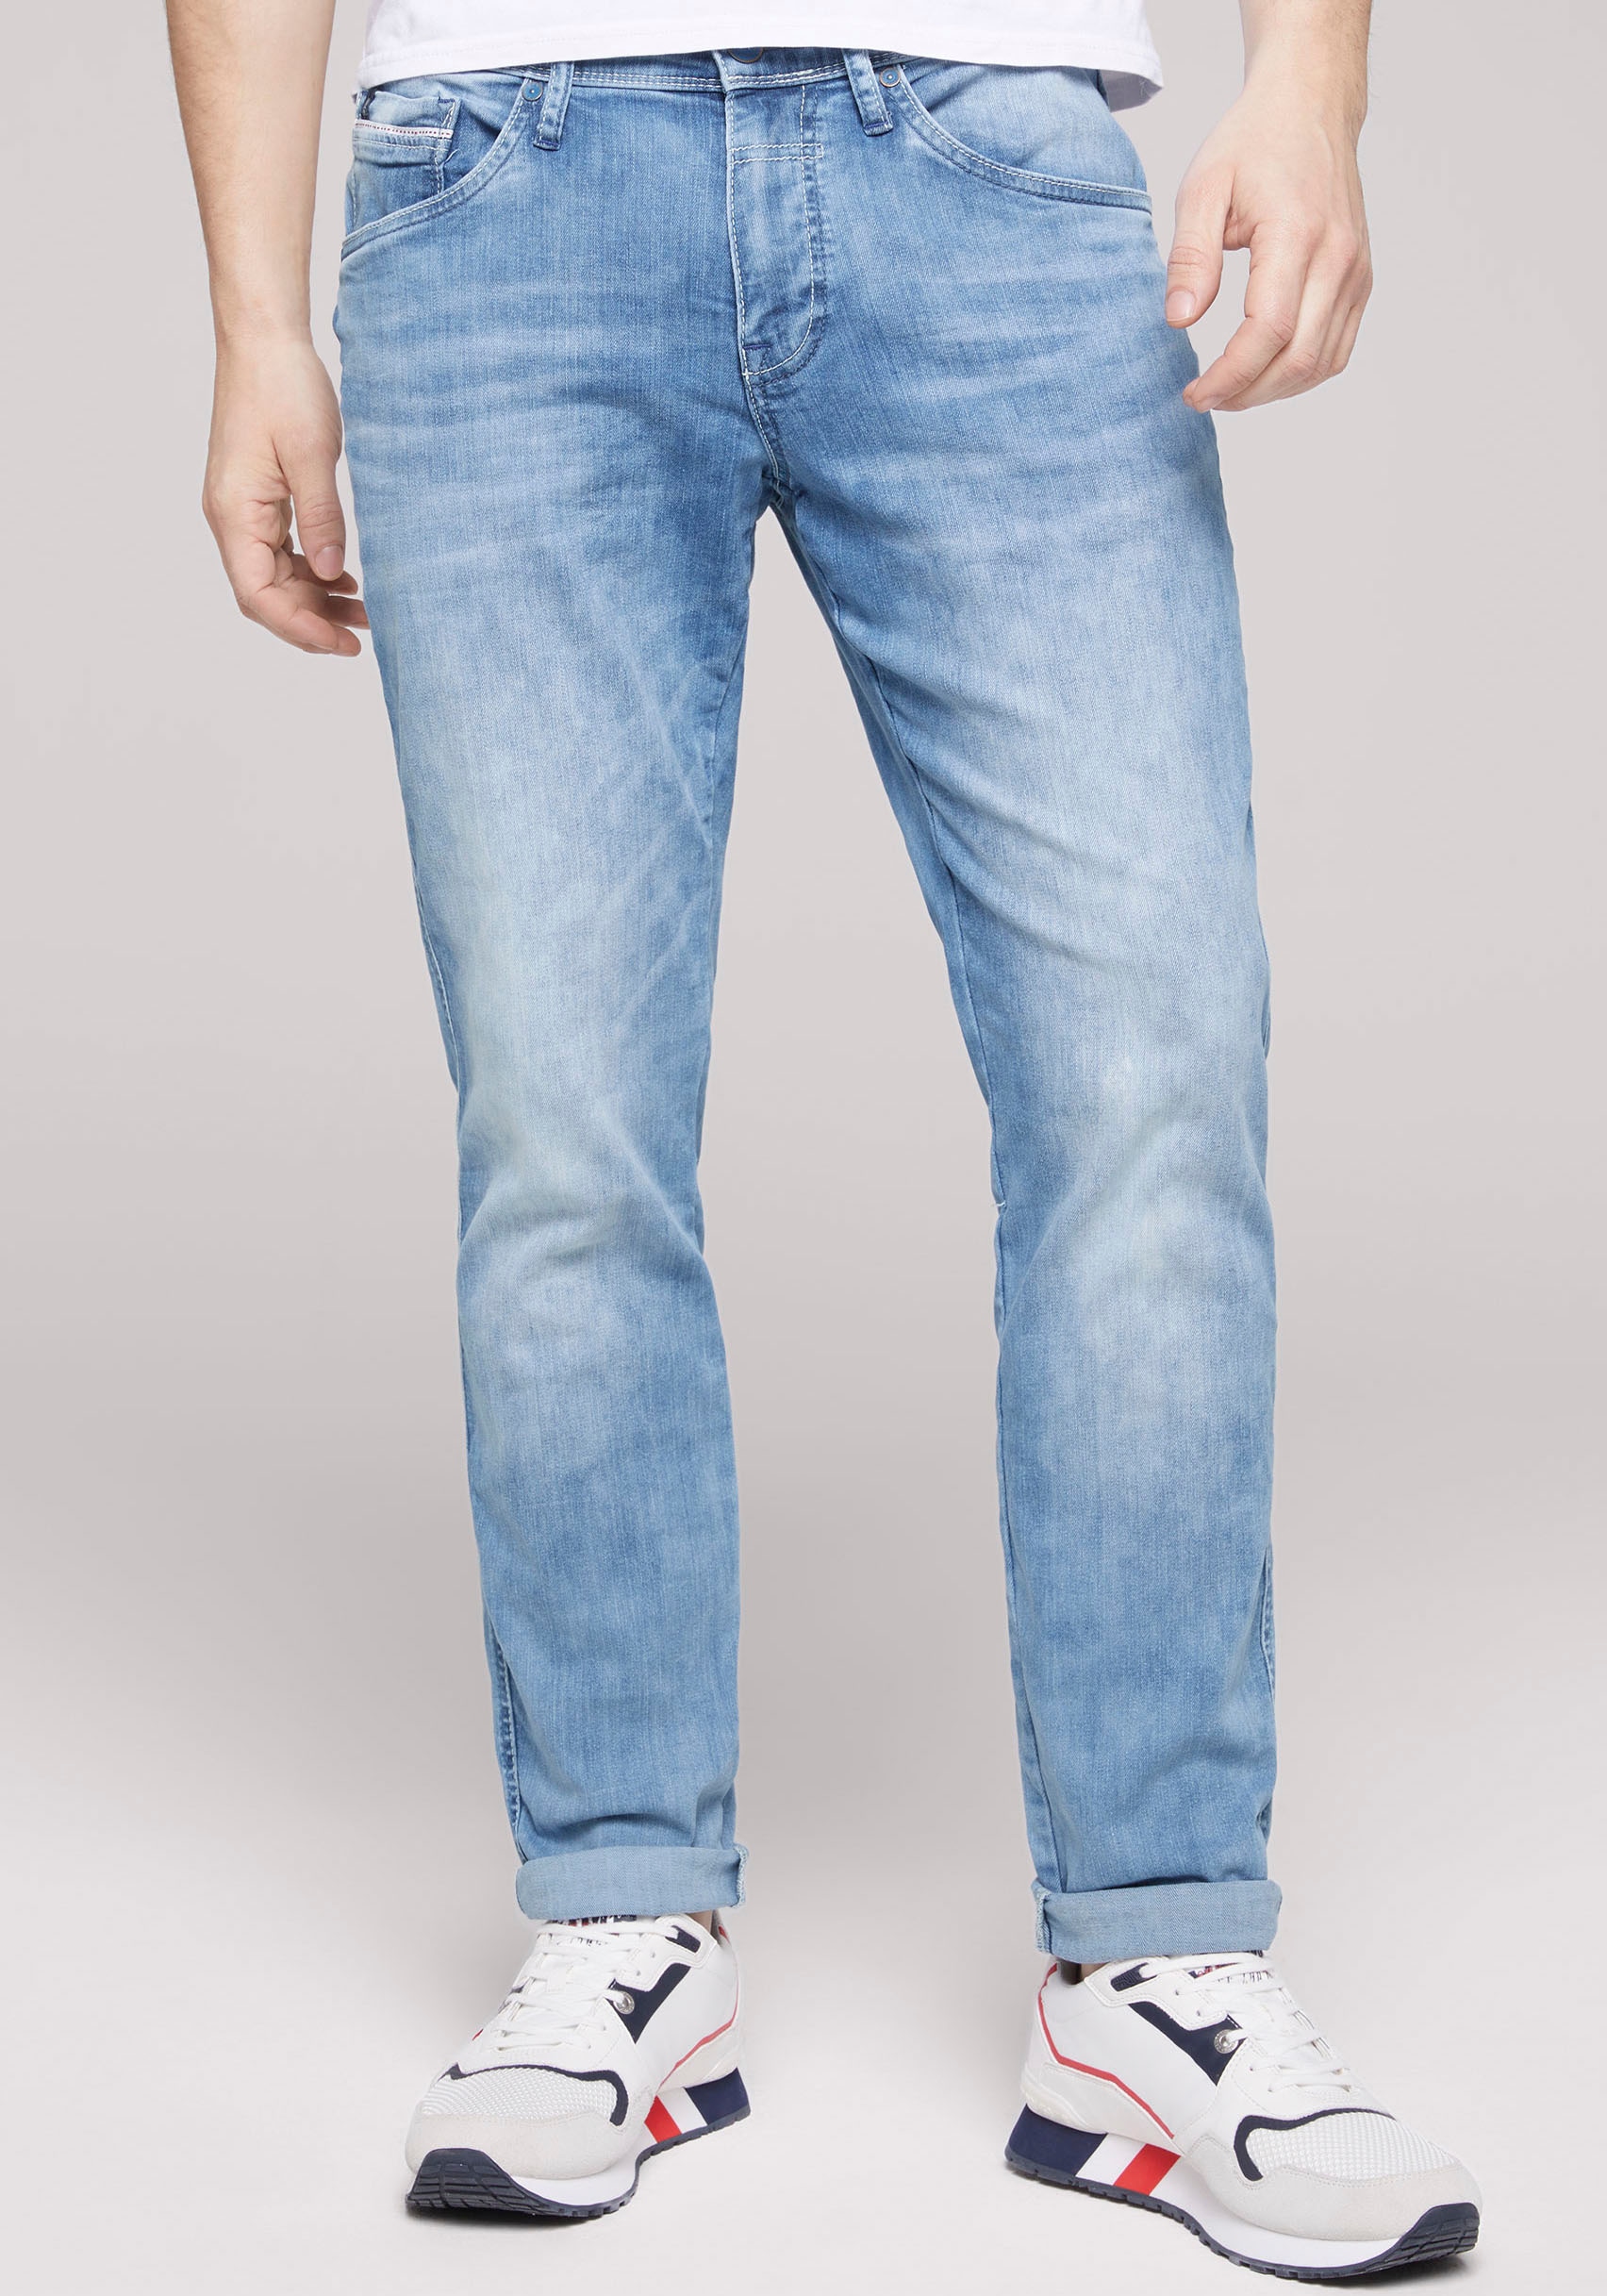 shoppen Jeans Bequeme auf ➤ Rechnung